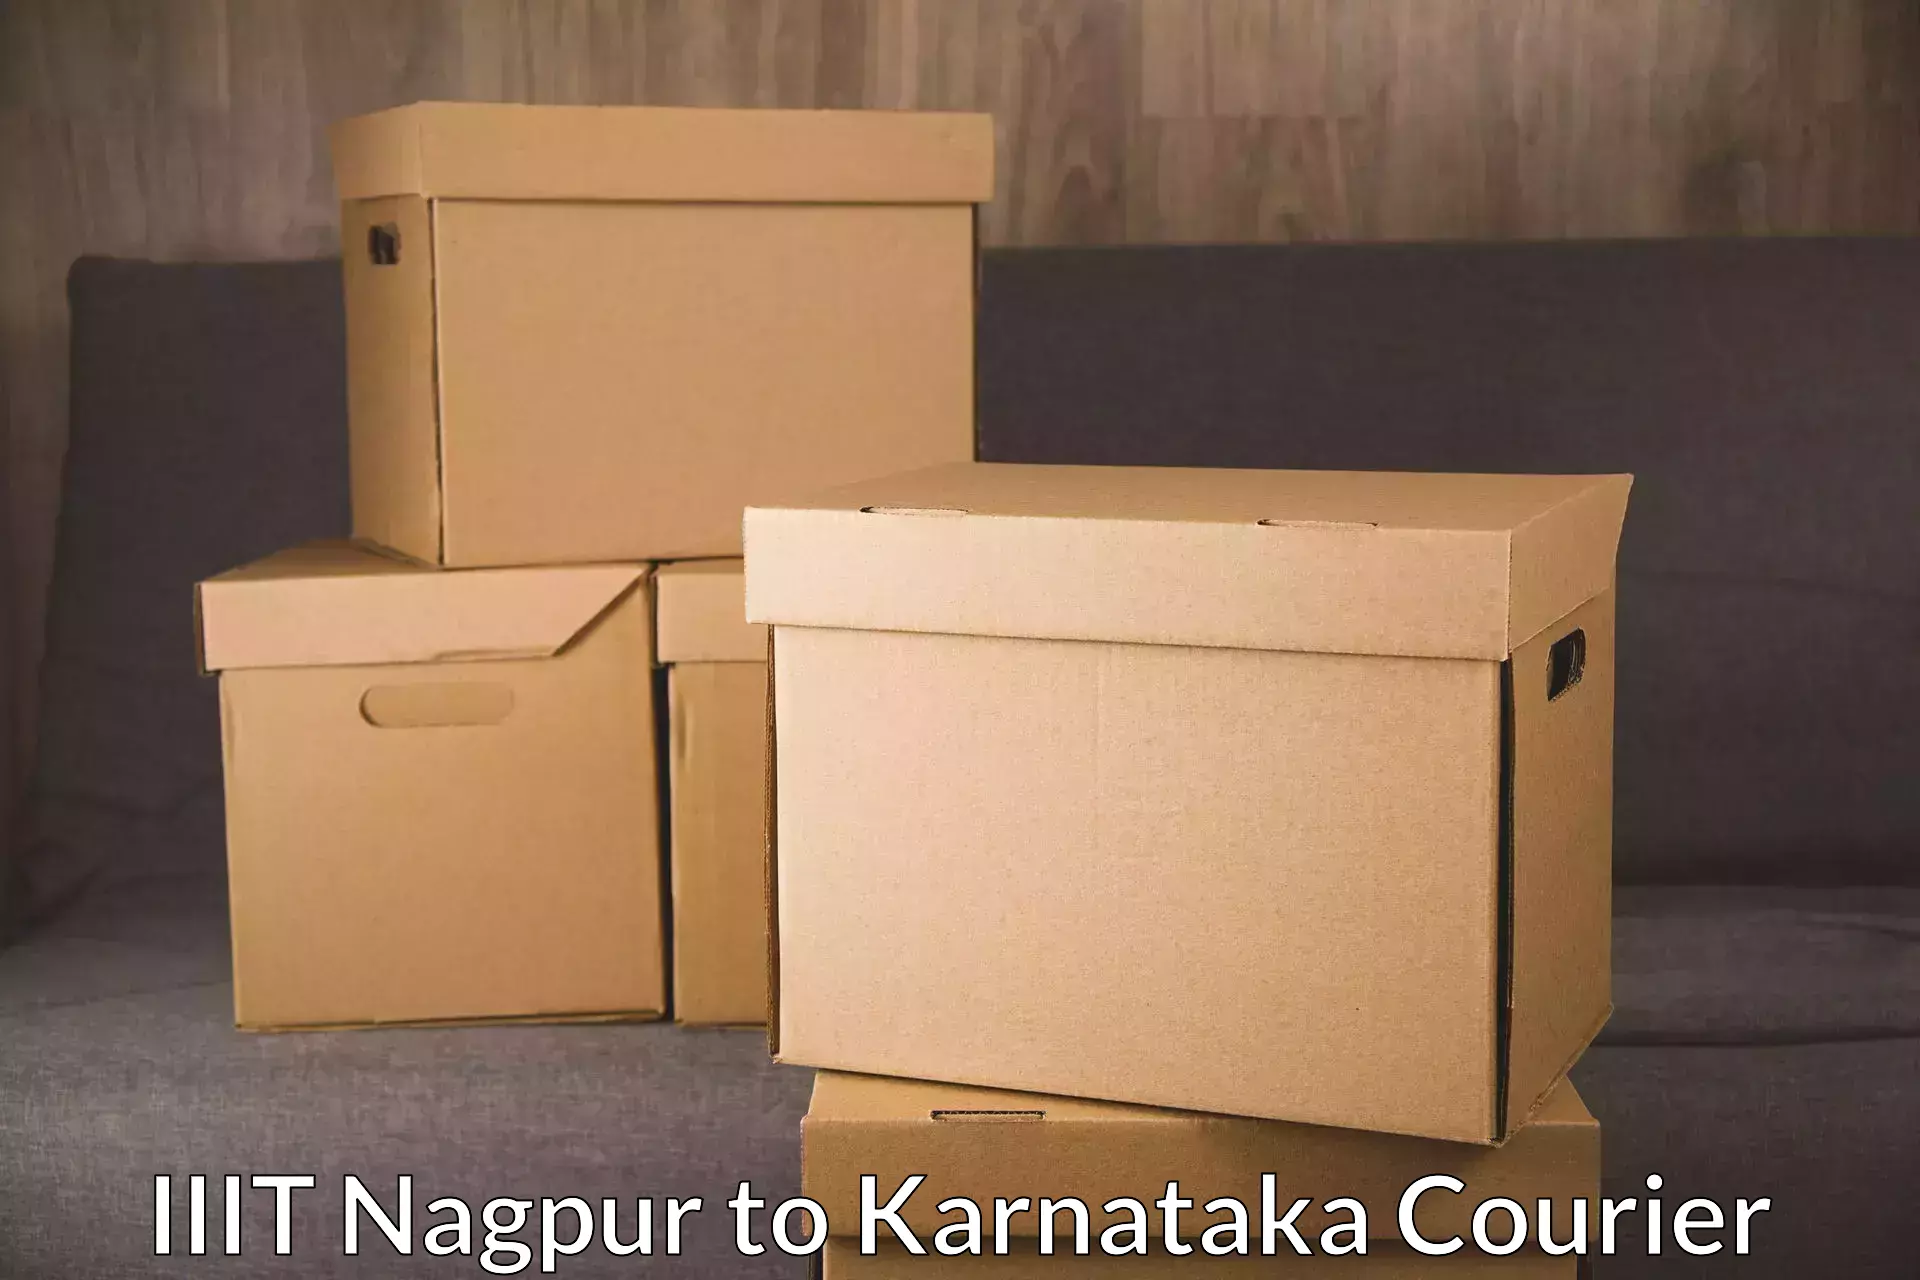 Efficient parcel service IIIT Nagpur to Lingasugur